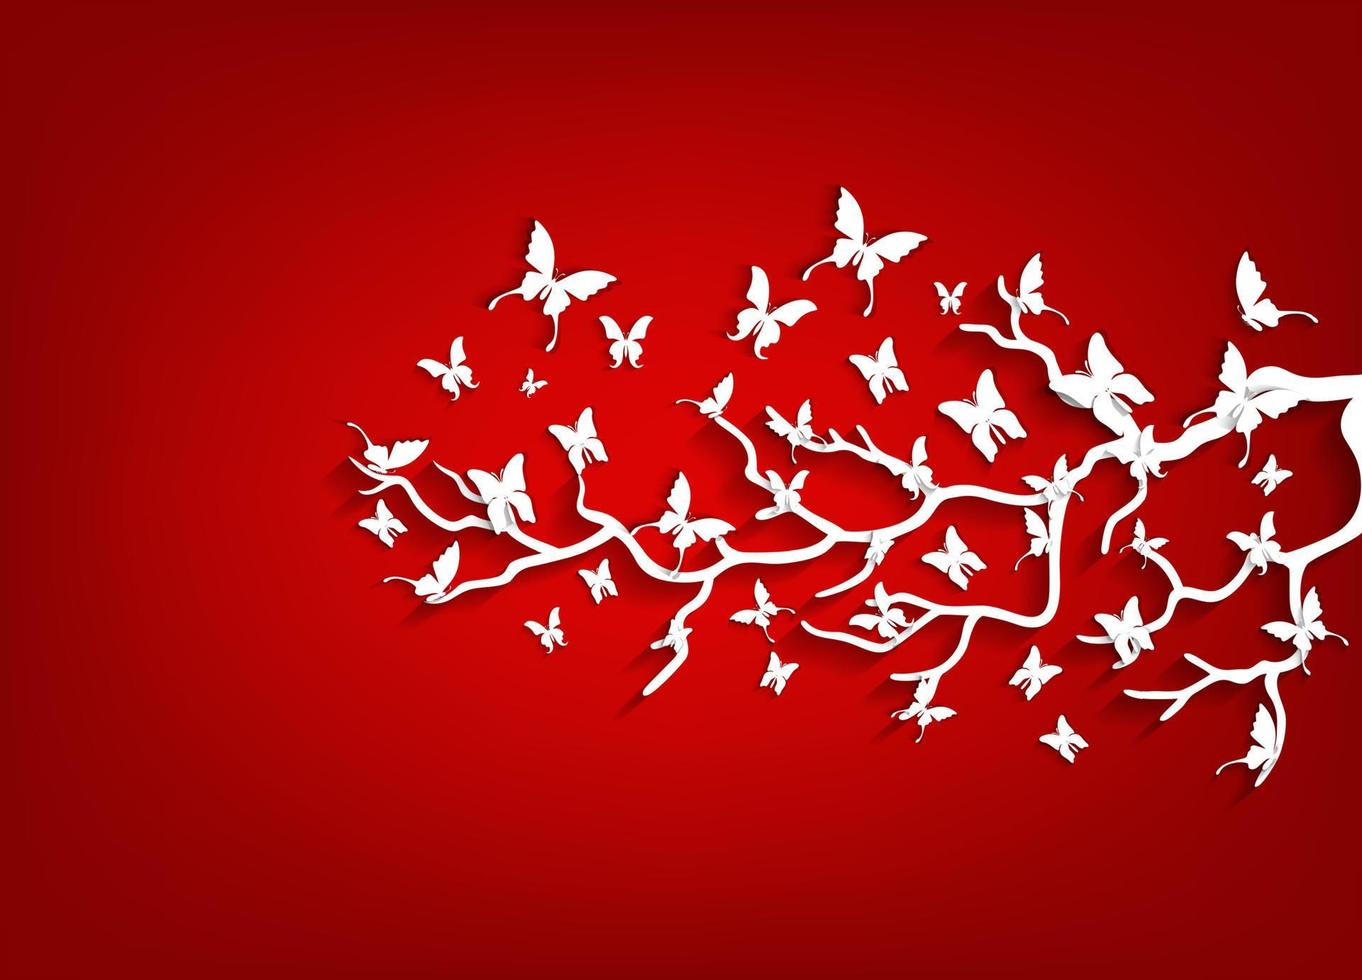 árbol de papel y mariposas sobre fondo rojo vector